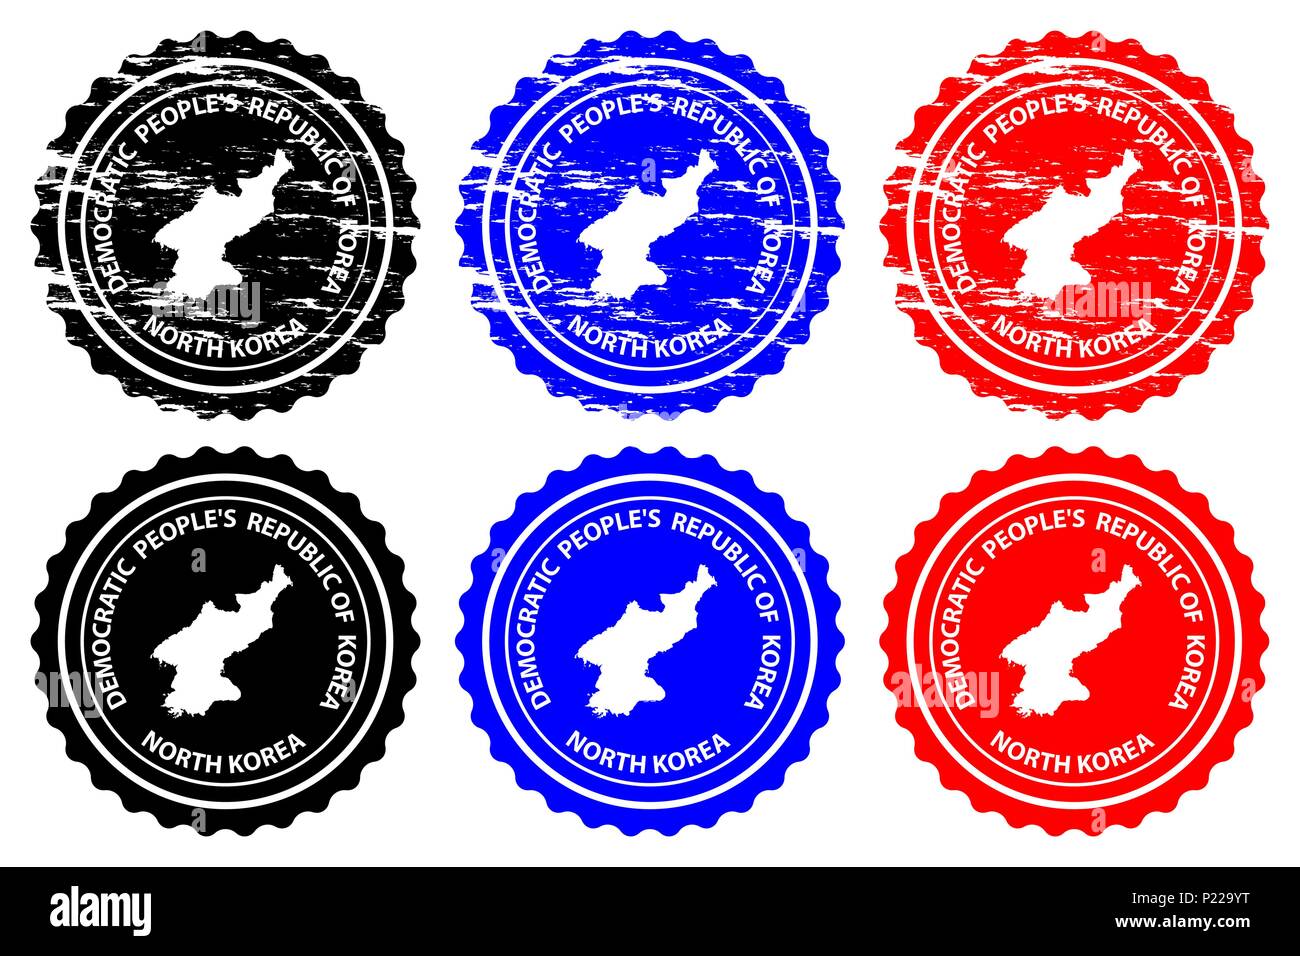 La Corée du Nord - timbres en caoutchouc - vecteur, République populaire démocratique de Corée (RPDC, PRK, la RPD de Corée, RPD de Corée) ou carte - sticker - noir, bleu une Illustration de Vecteur